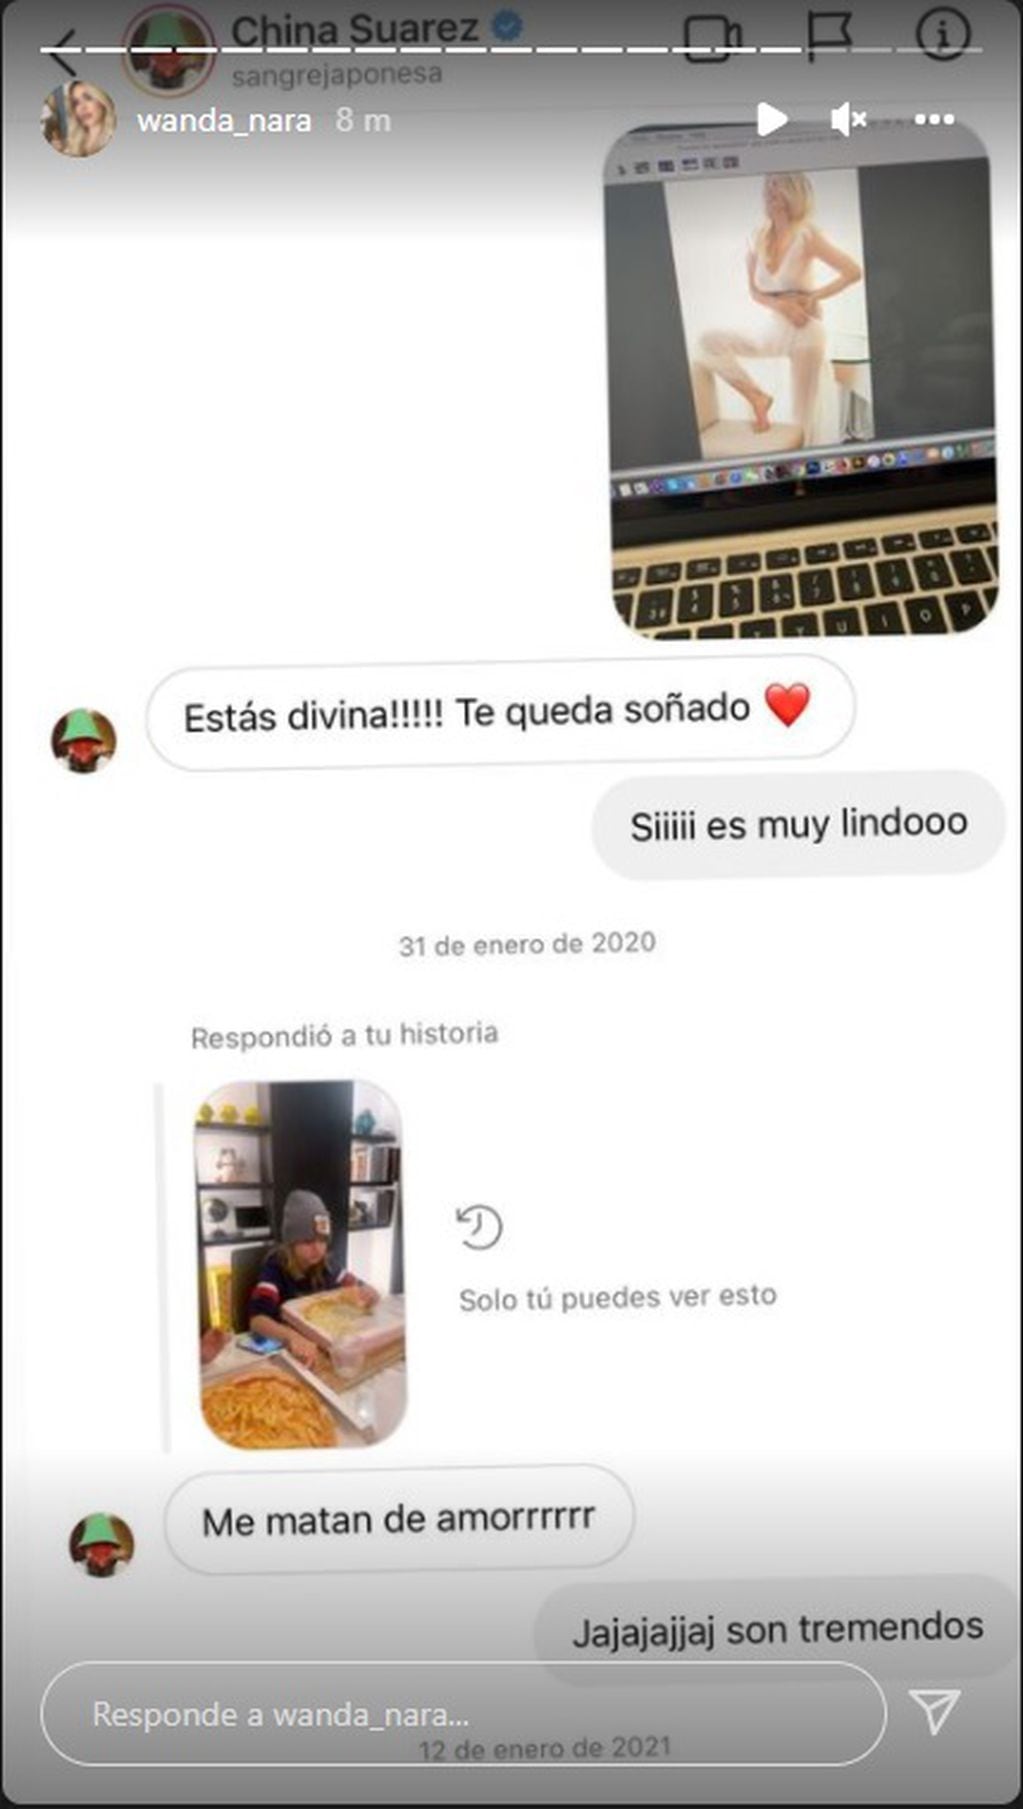 Capturas de pantalla de conversaciones entre la China Suárez y Wanda Nara